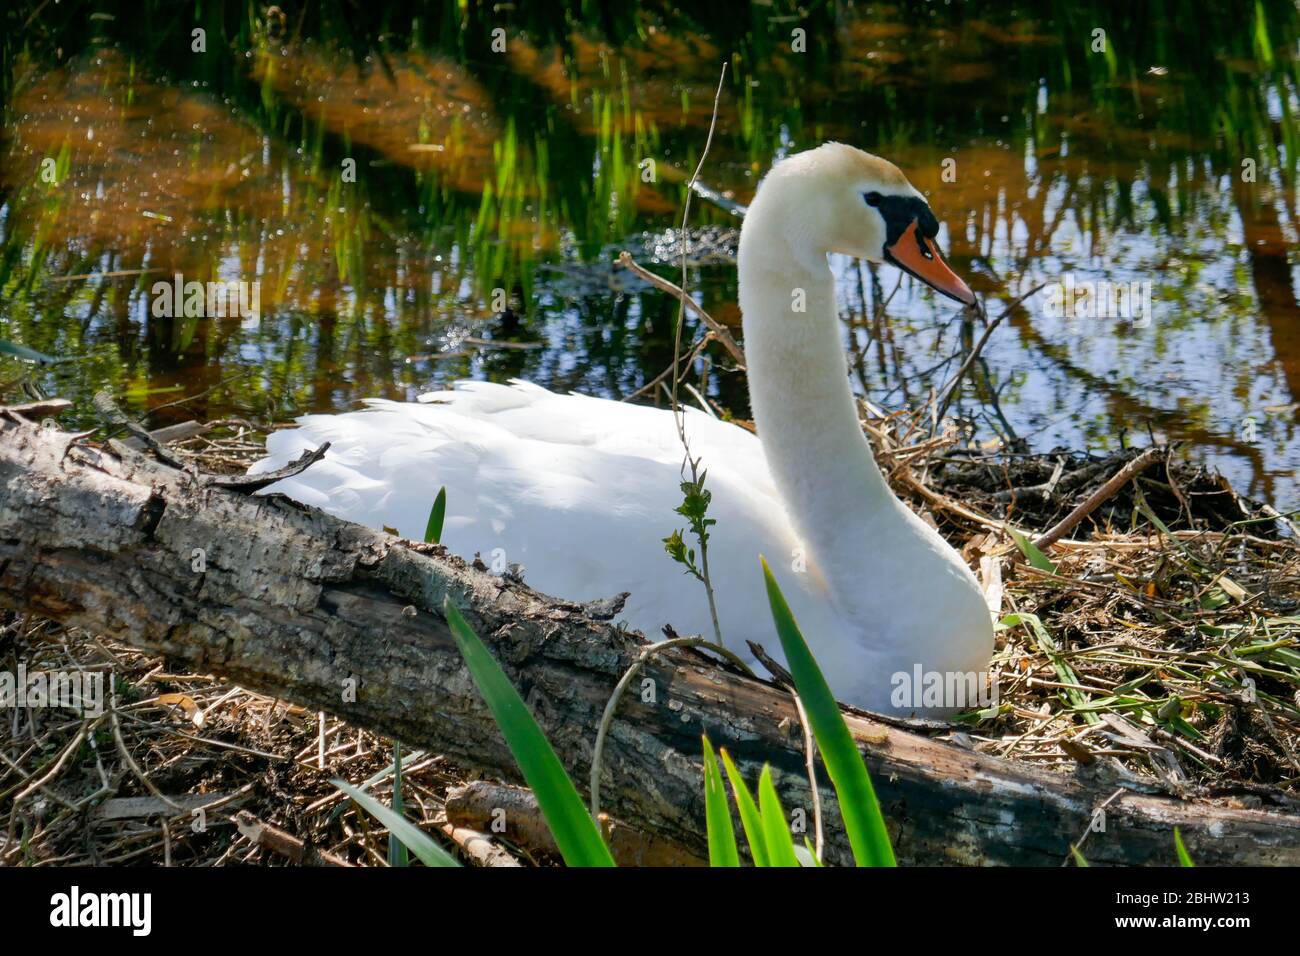 swan au nid dans la zone rurale 'het groene hart' dans l'ouest de la Hollande Banque D'Images